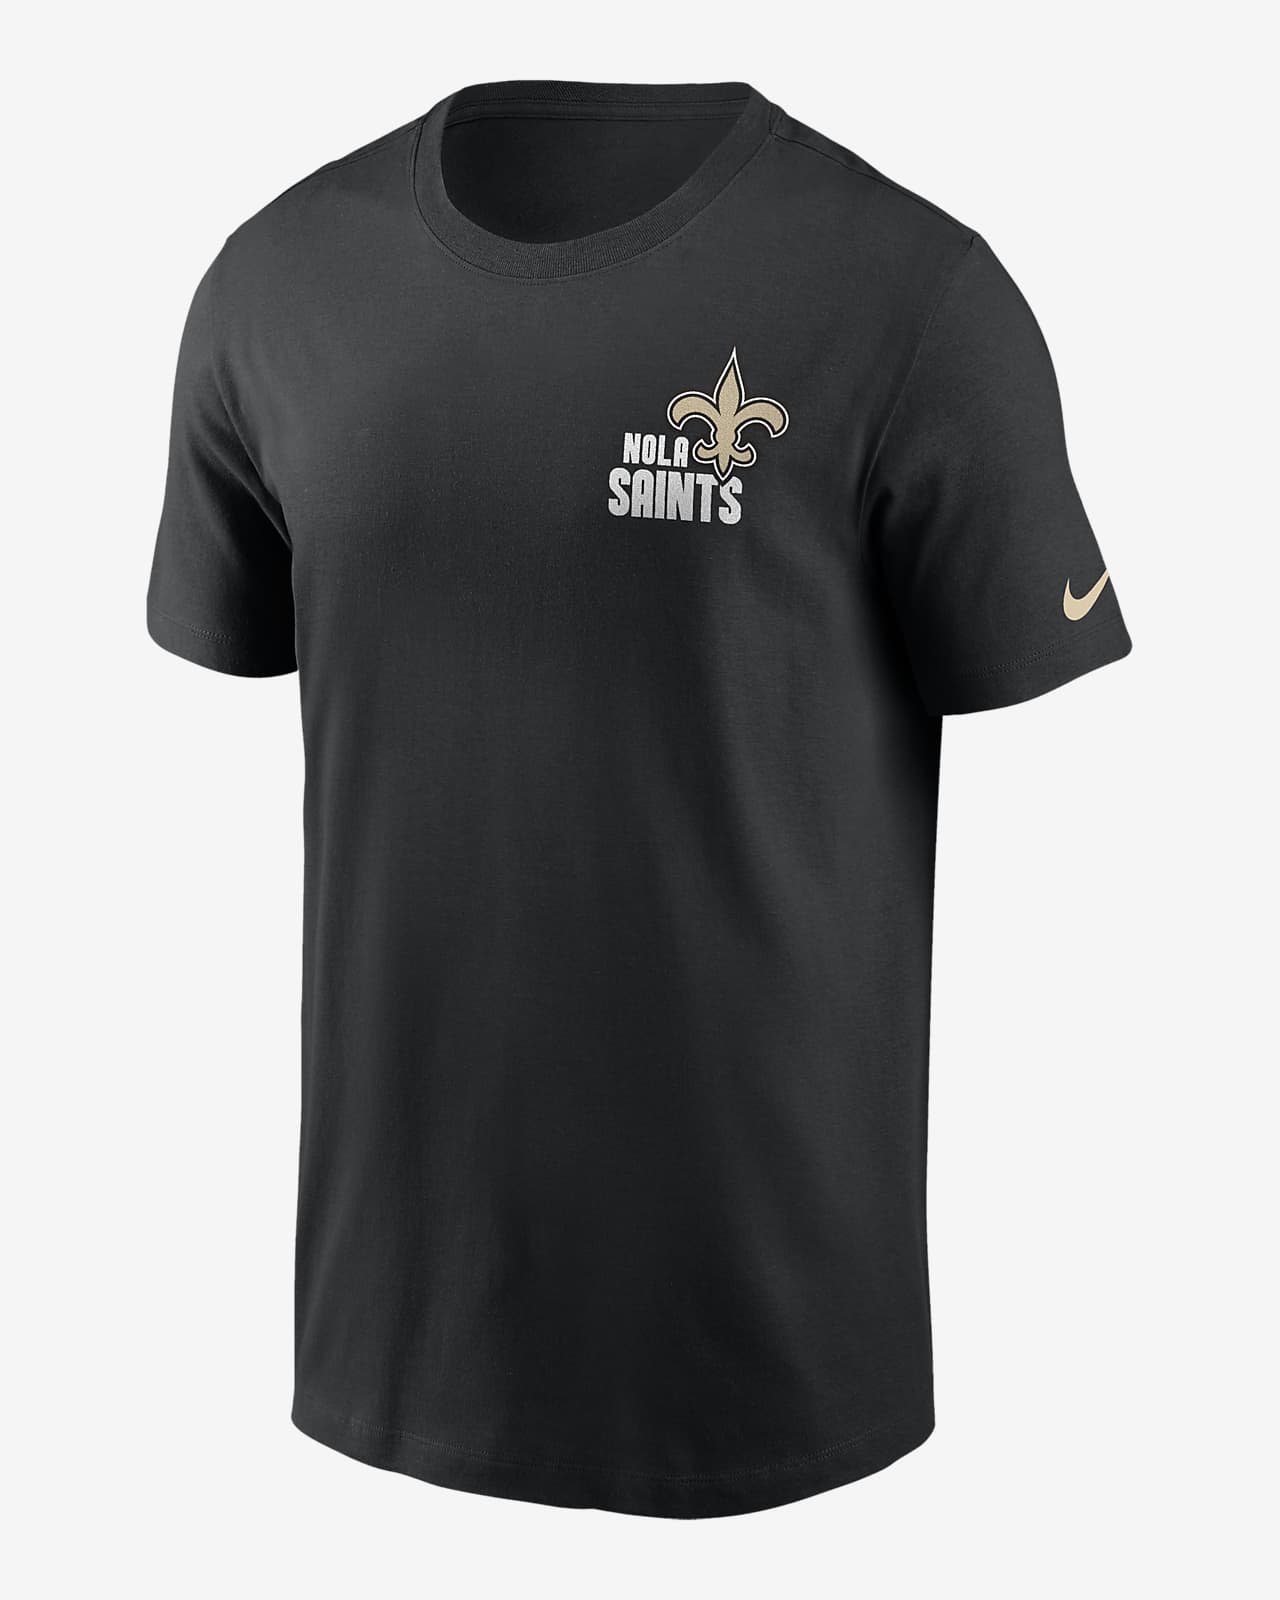 New Orleans Saints Blitz Team Essential Men's Nike NFL T-Shirt